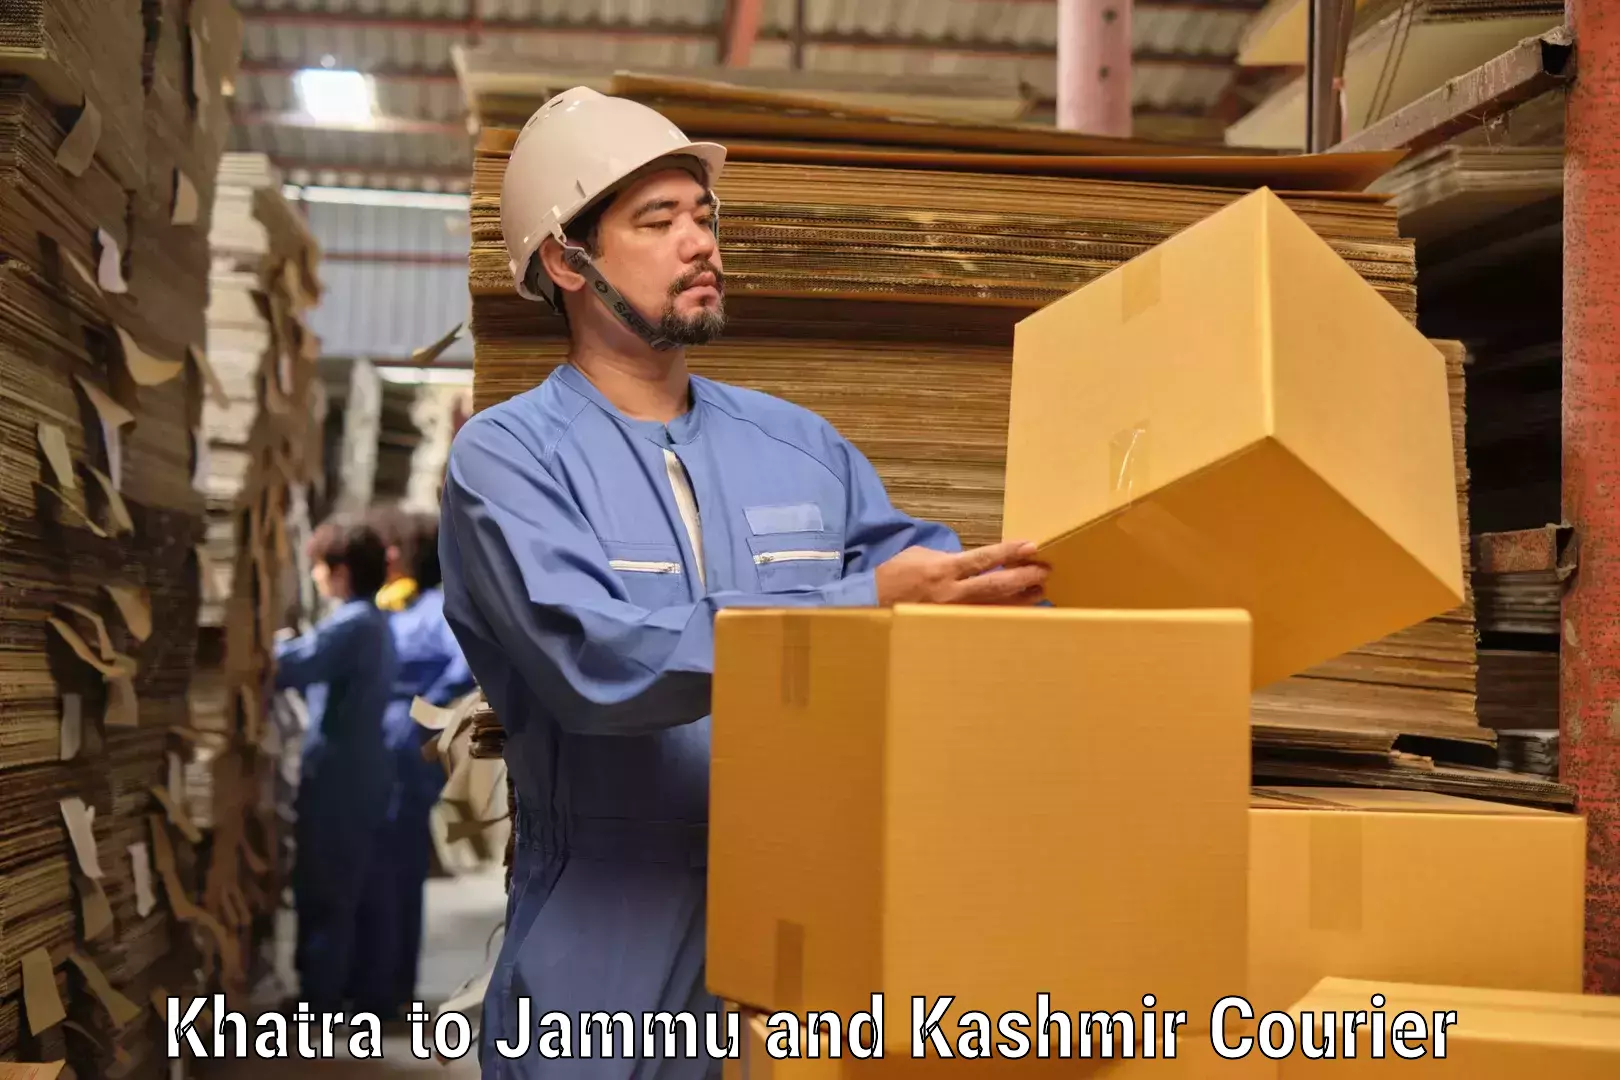 Next-generation courier services Khatra to Shopian